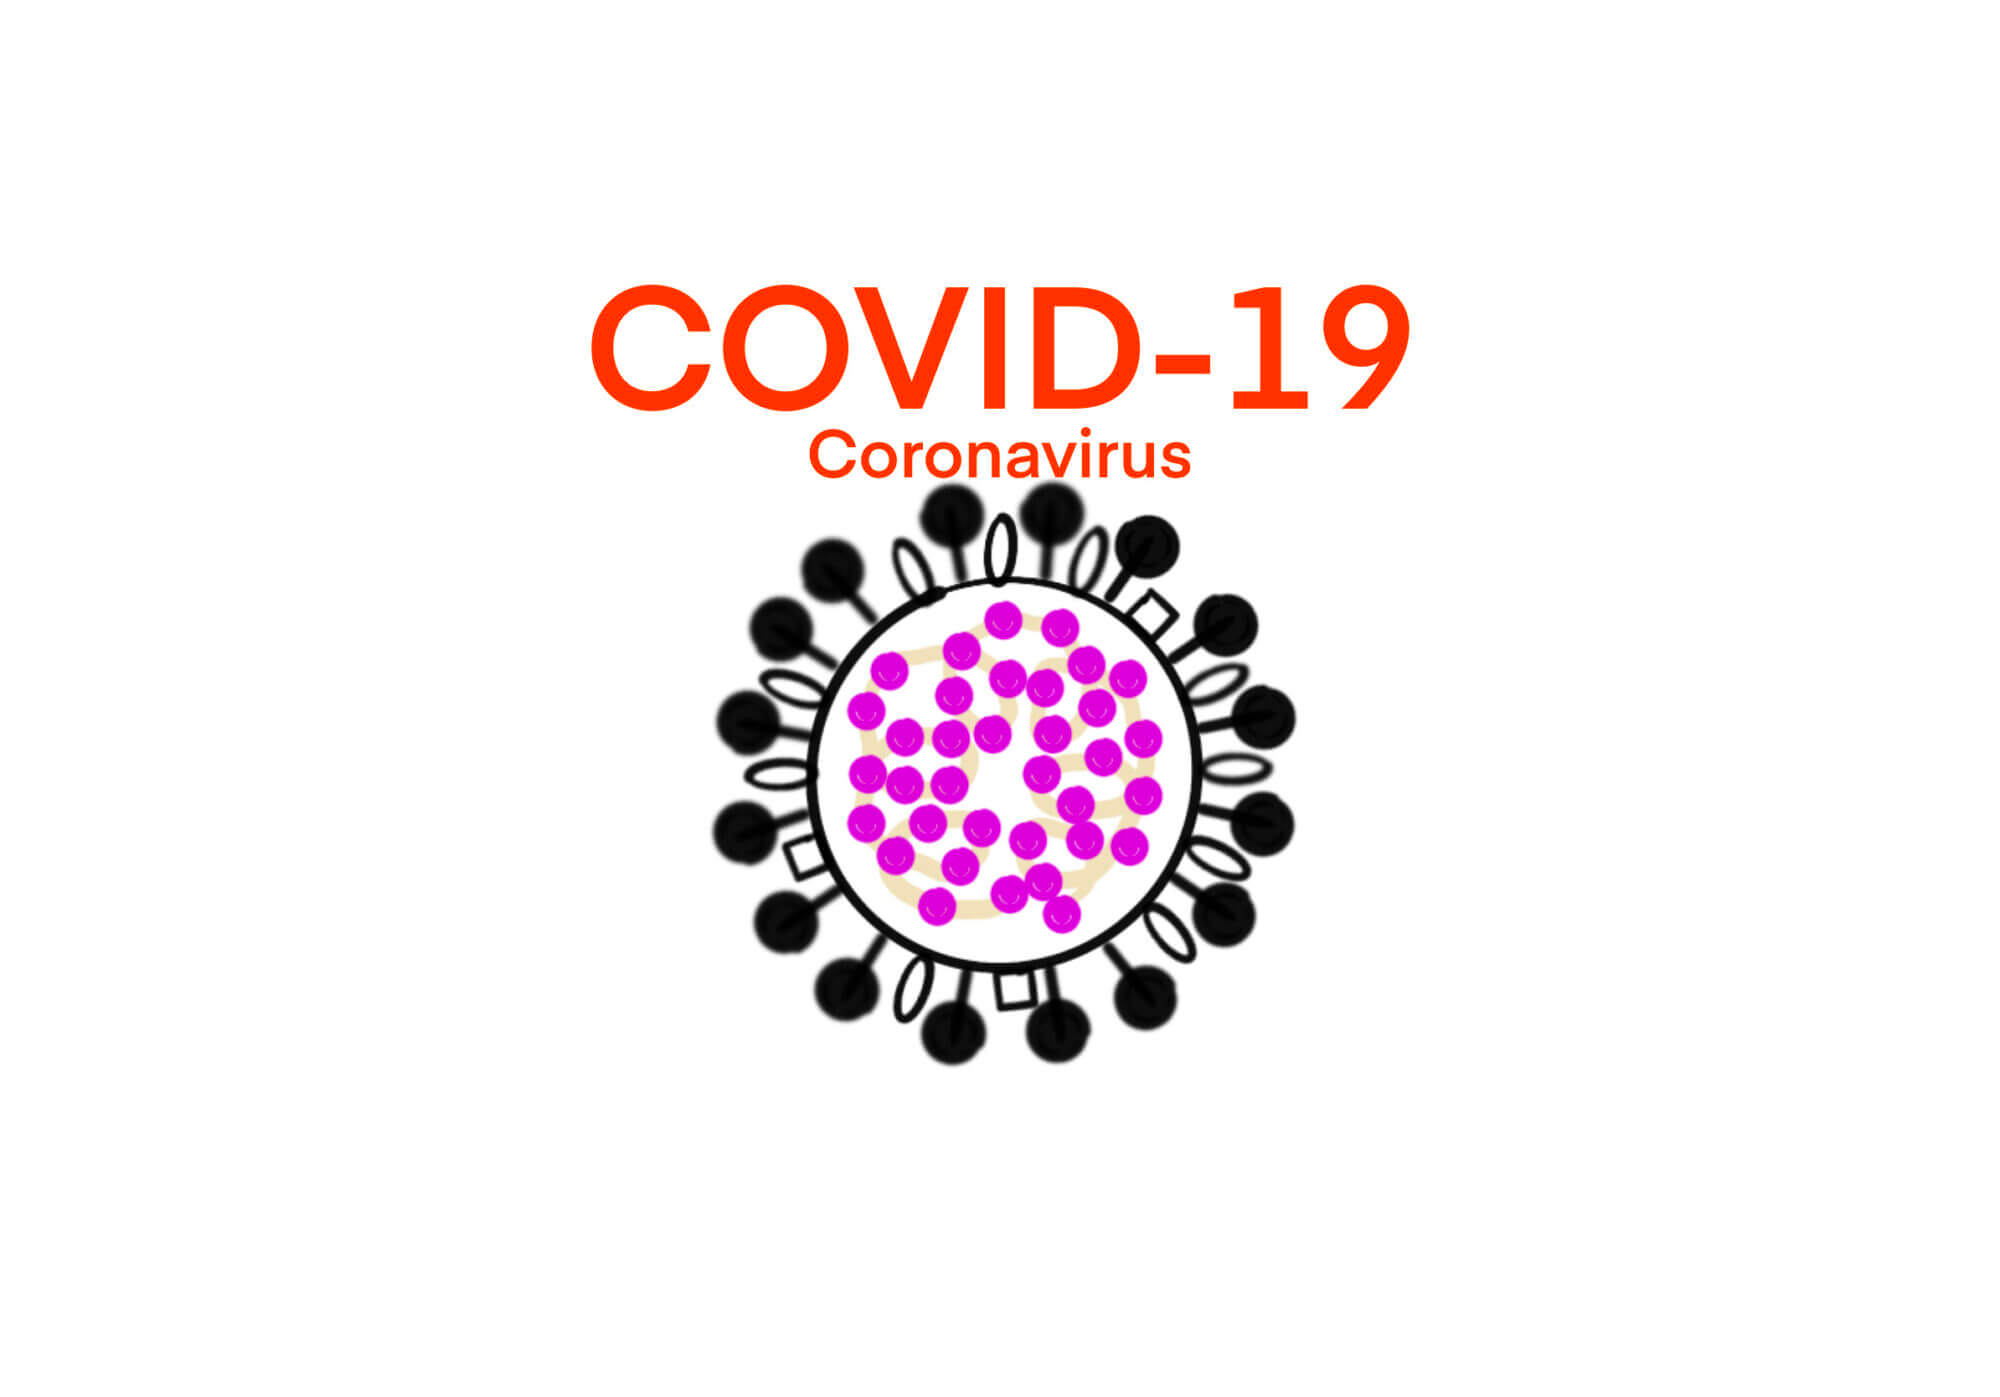 [健康] 新型コロナウイルス感染症・今日までの世界のトレンドをまとめた – 世界的な新規感染者数は高止まりしつつある –  (~2020/08/27) ID21804